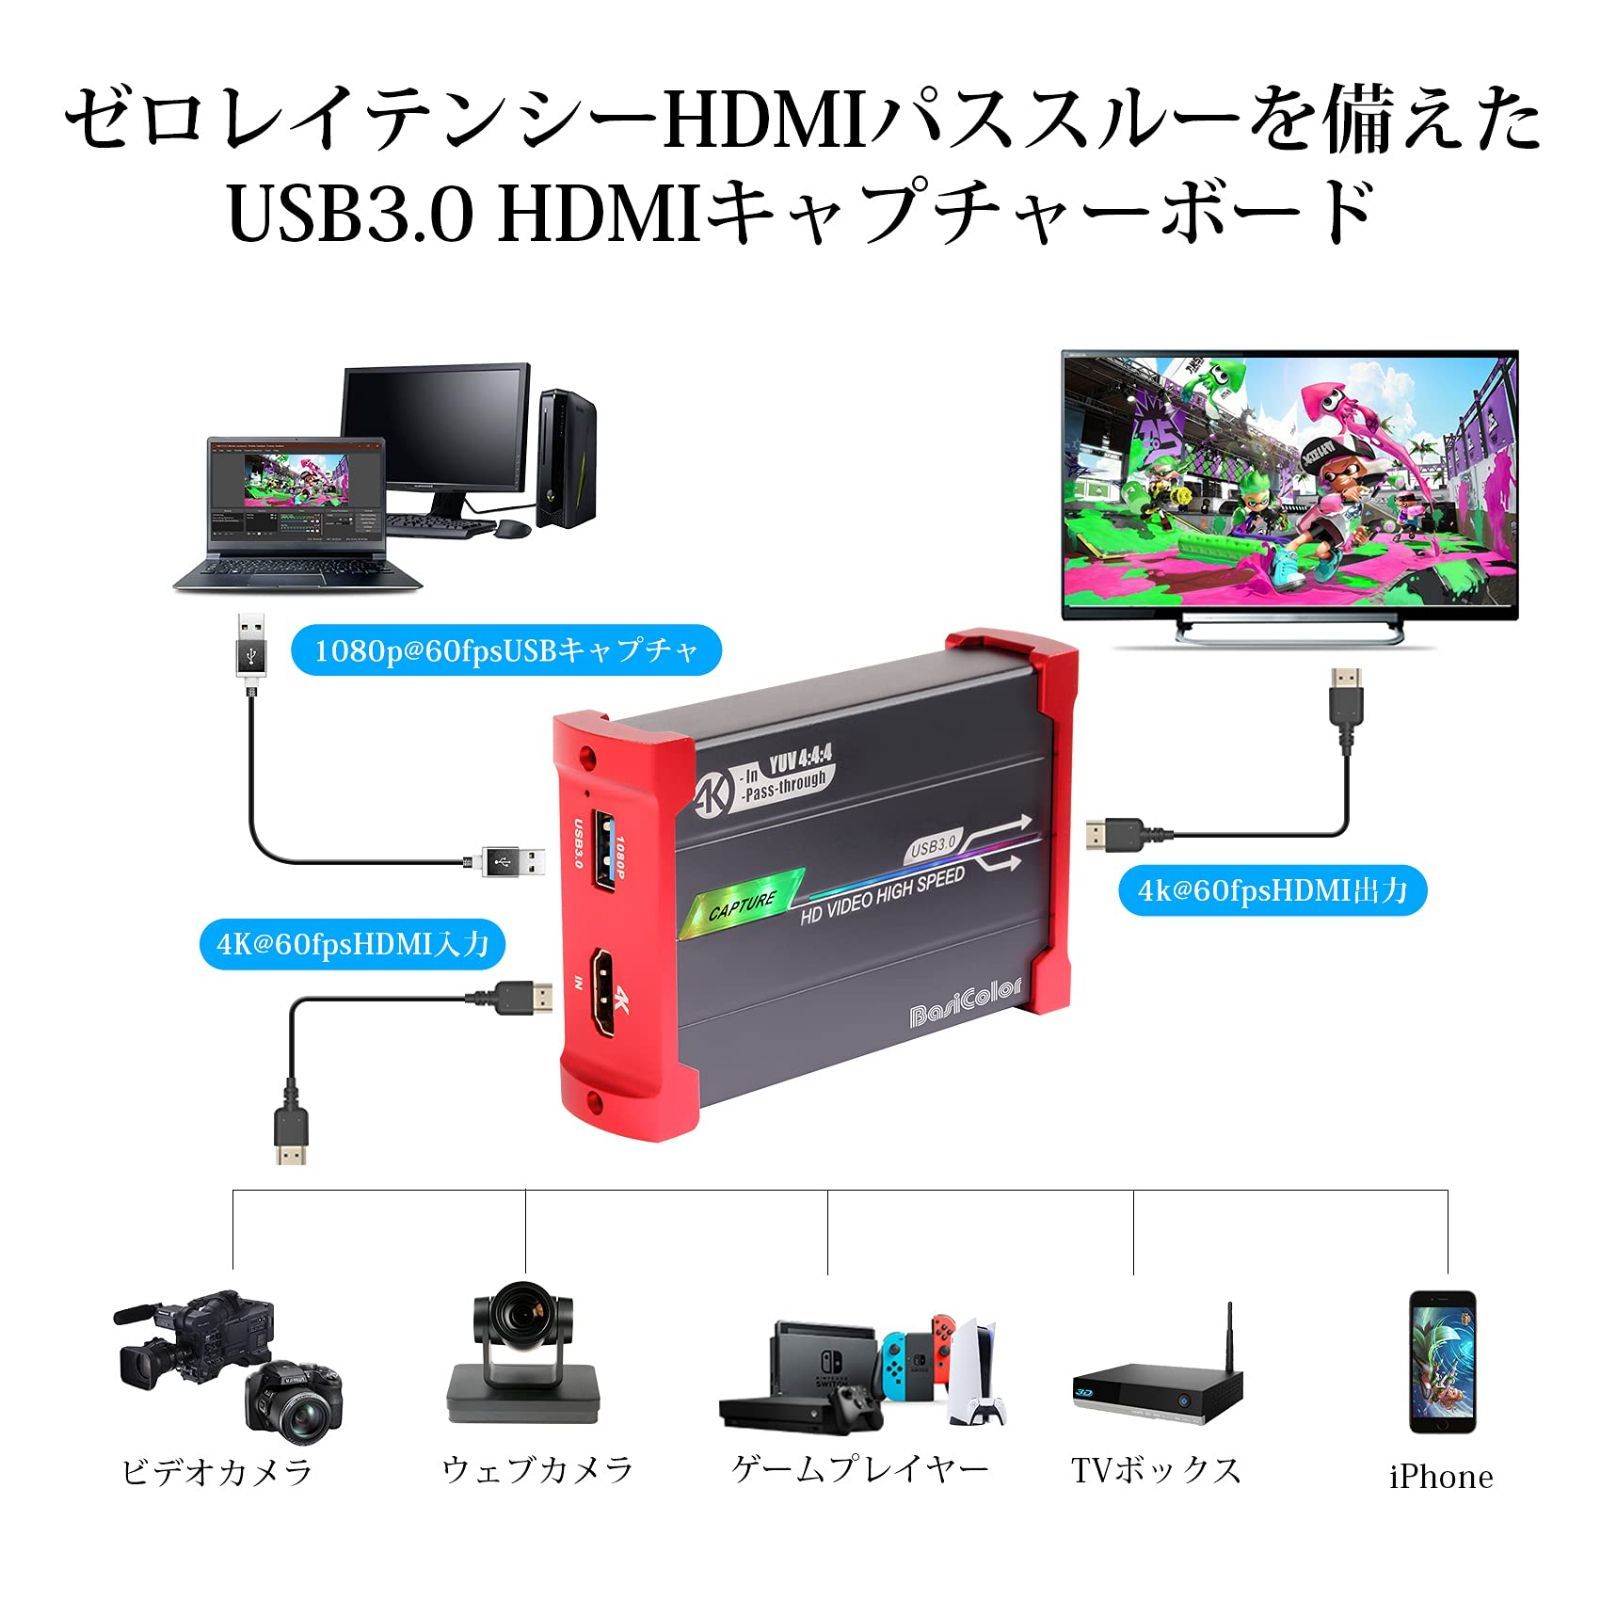 PS5／Switch キャプチャー ボード パススルー 録画 HDMIセット